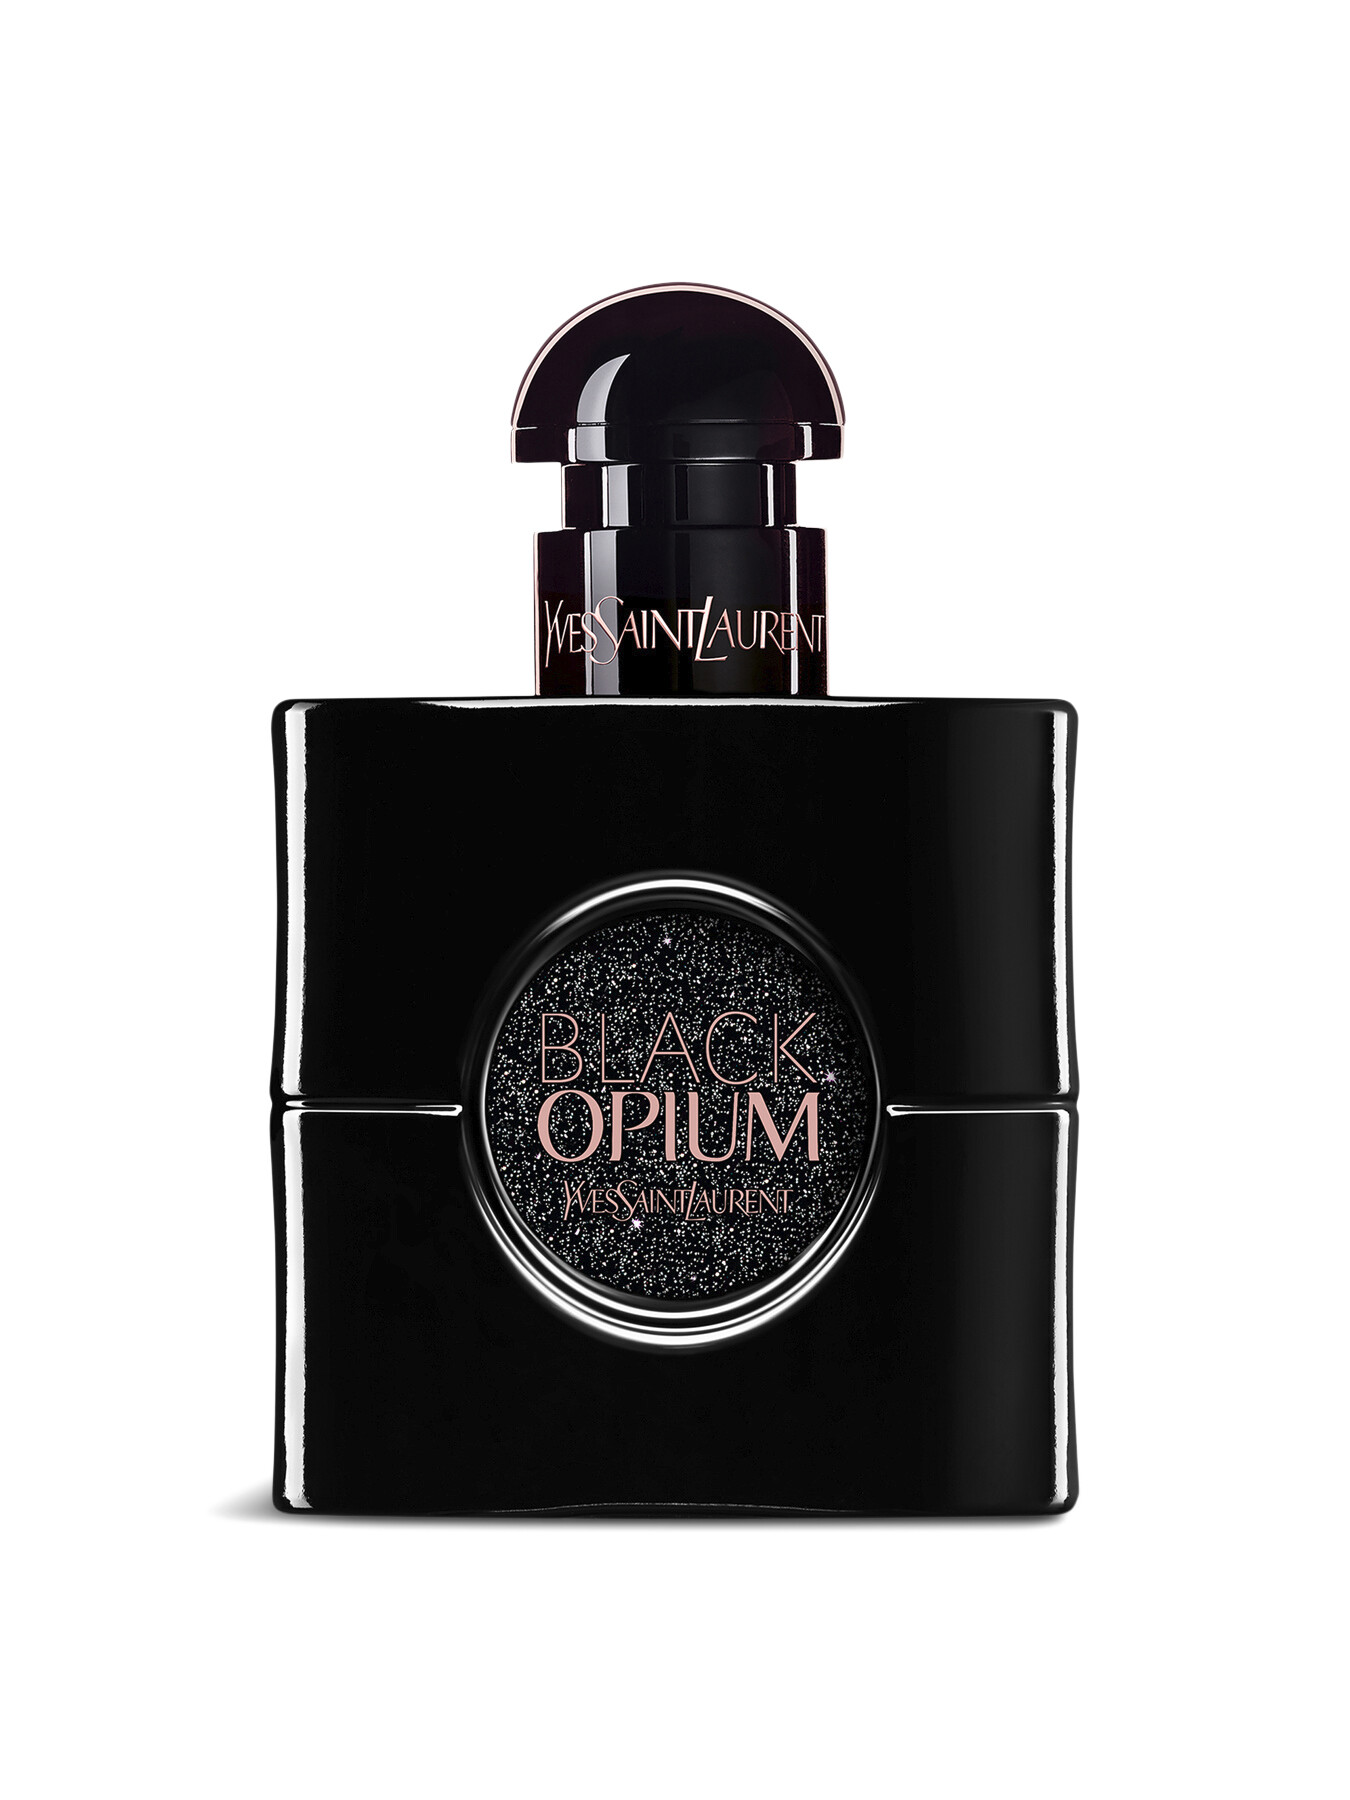 Ysl Black Opium Le Parfum 30ml